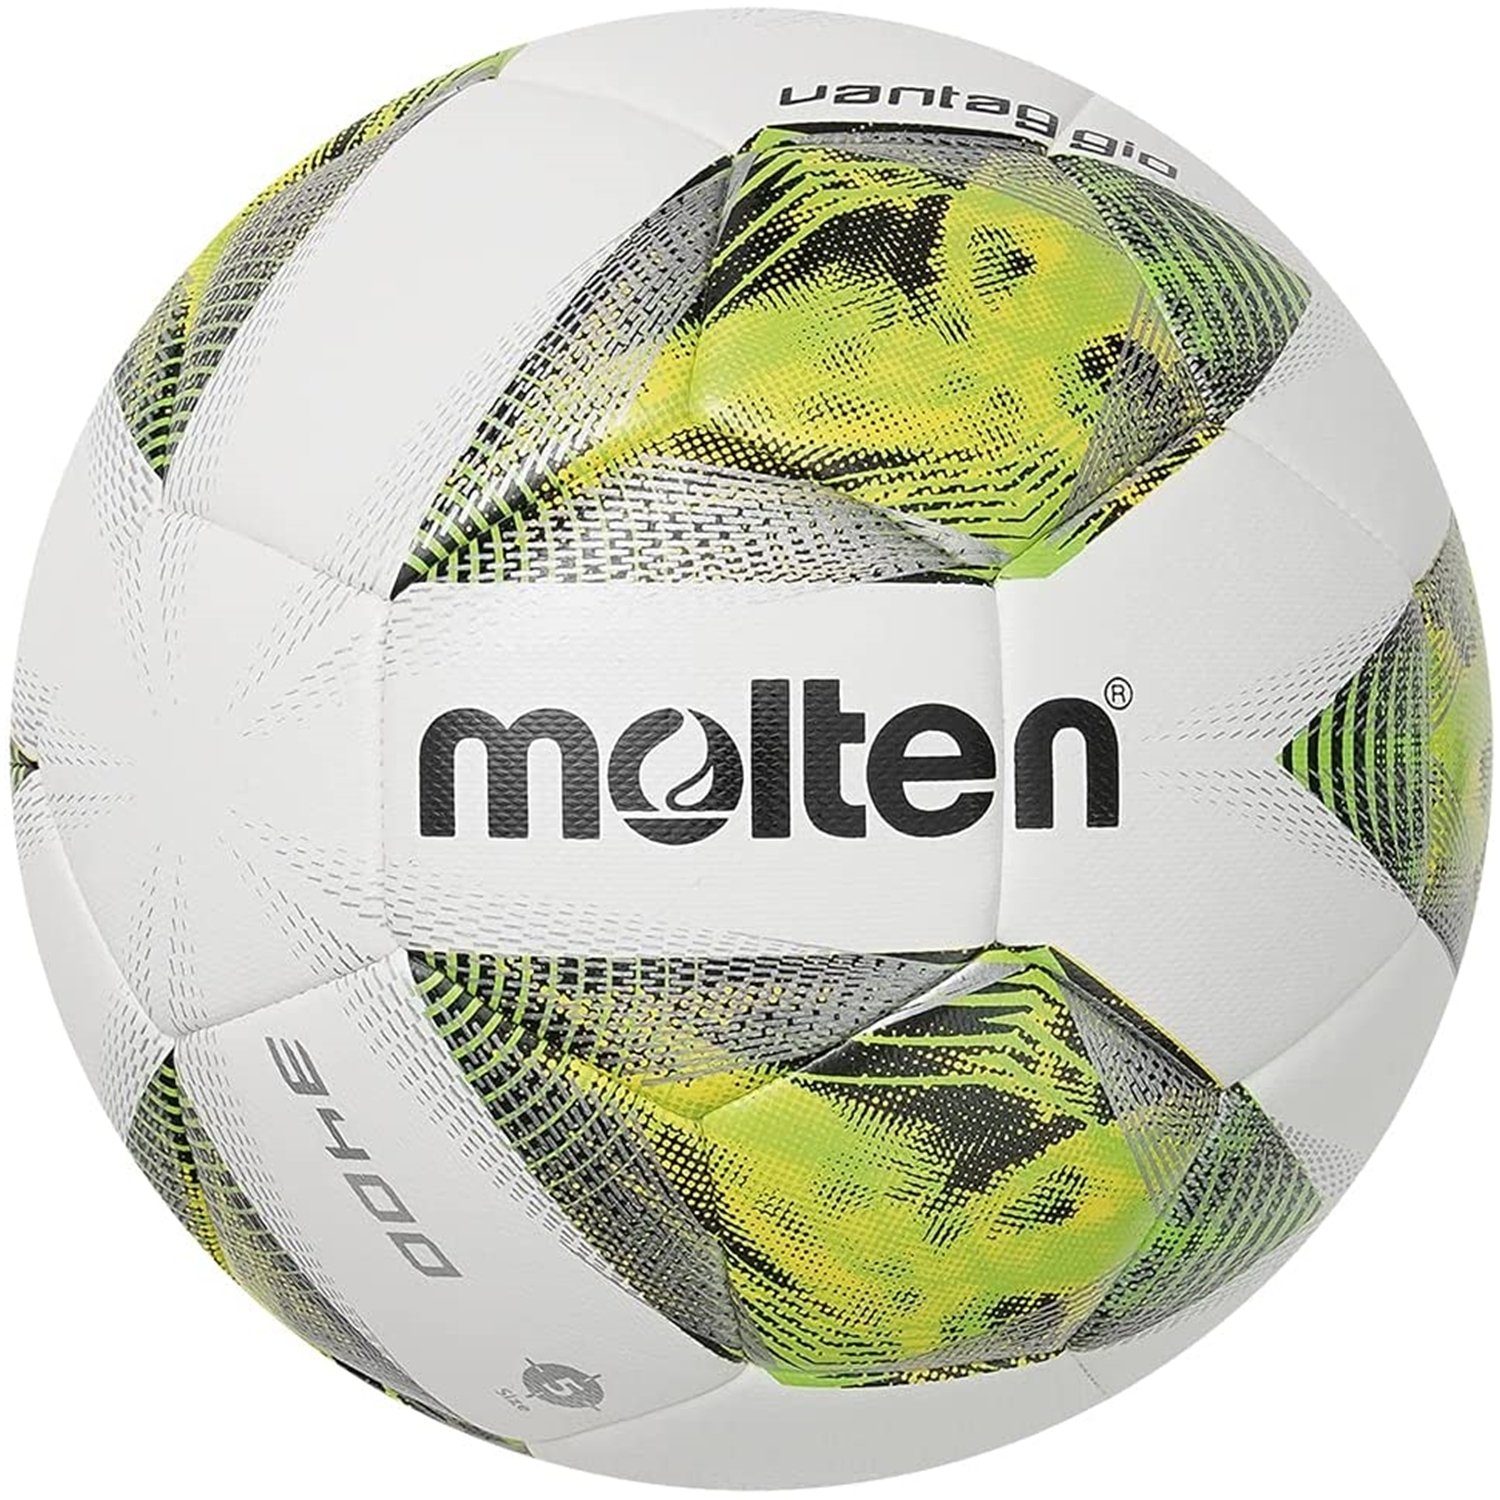 Molten Trainingsball F4A3400-G Fußball Top